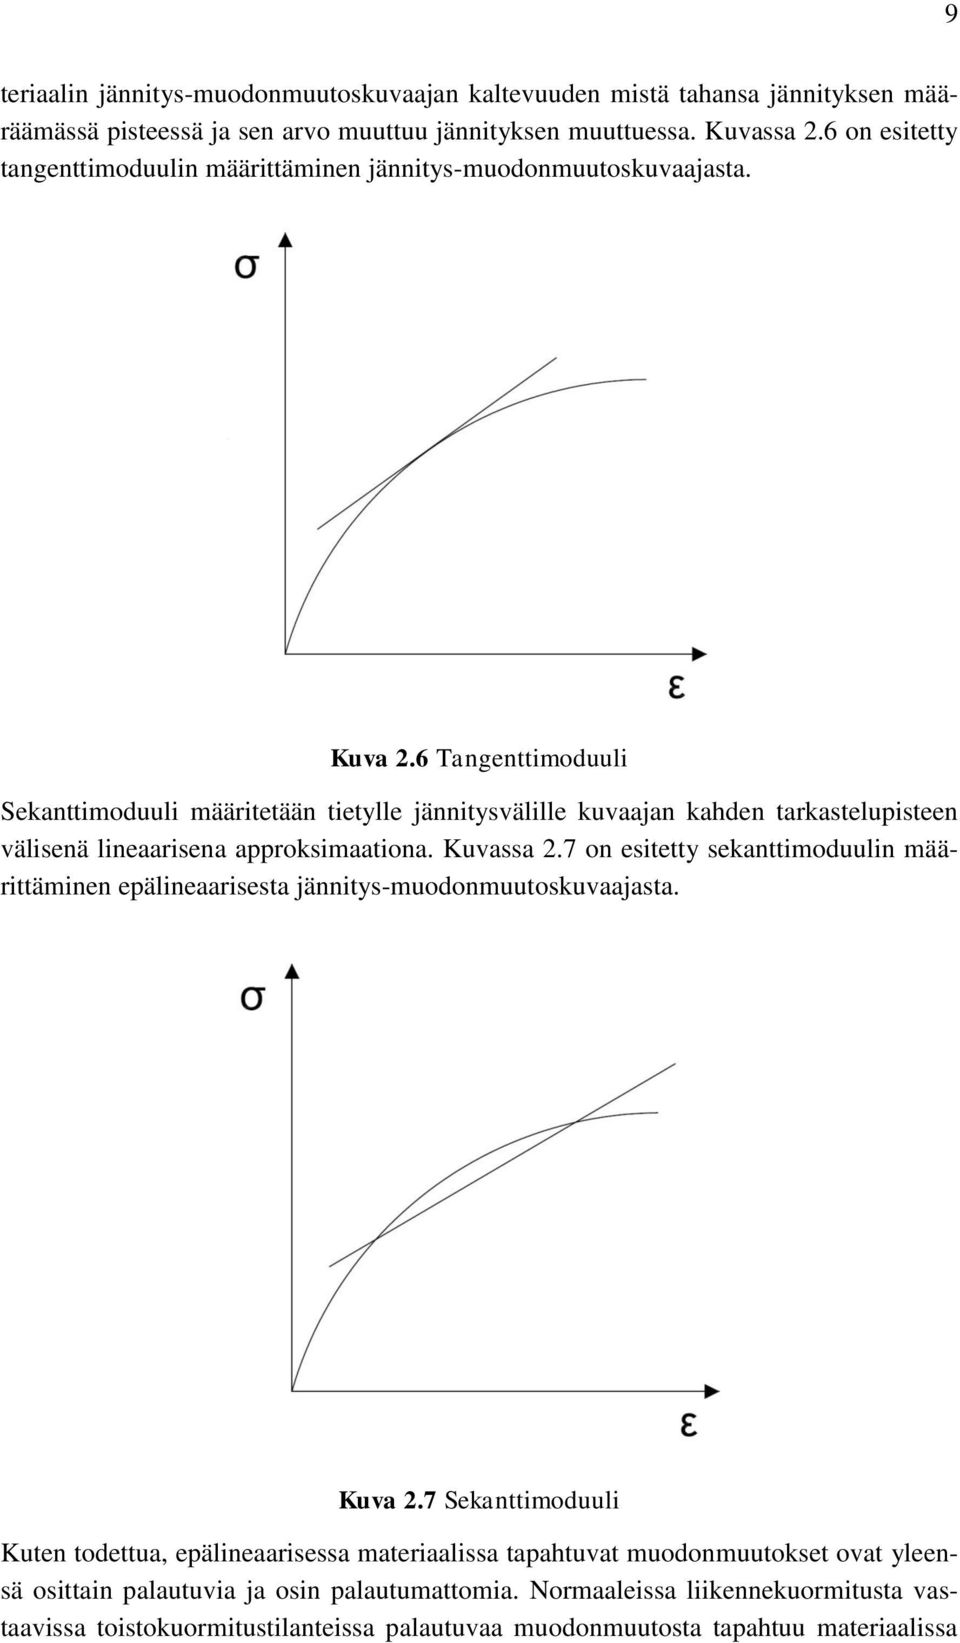 6 Tangenttimoduuli Sekanttimoduuli määritetään tietylle jännitysvälille kuvaajan kahden tarkastelupisteen välisenä lineaarisena approksimaationa. Kuvassa 2.